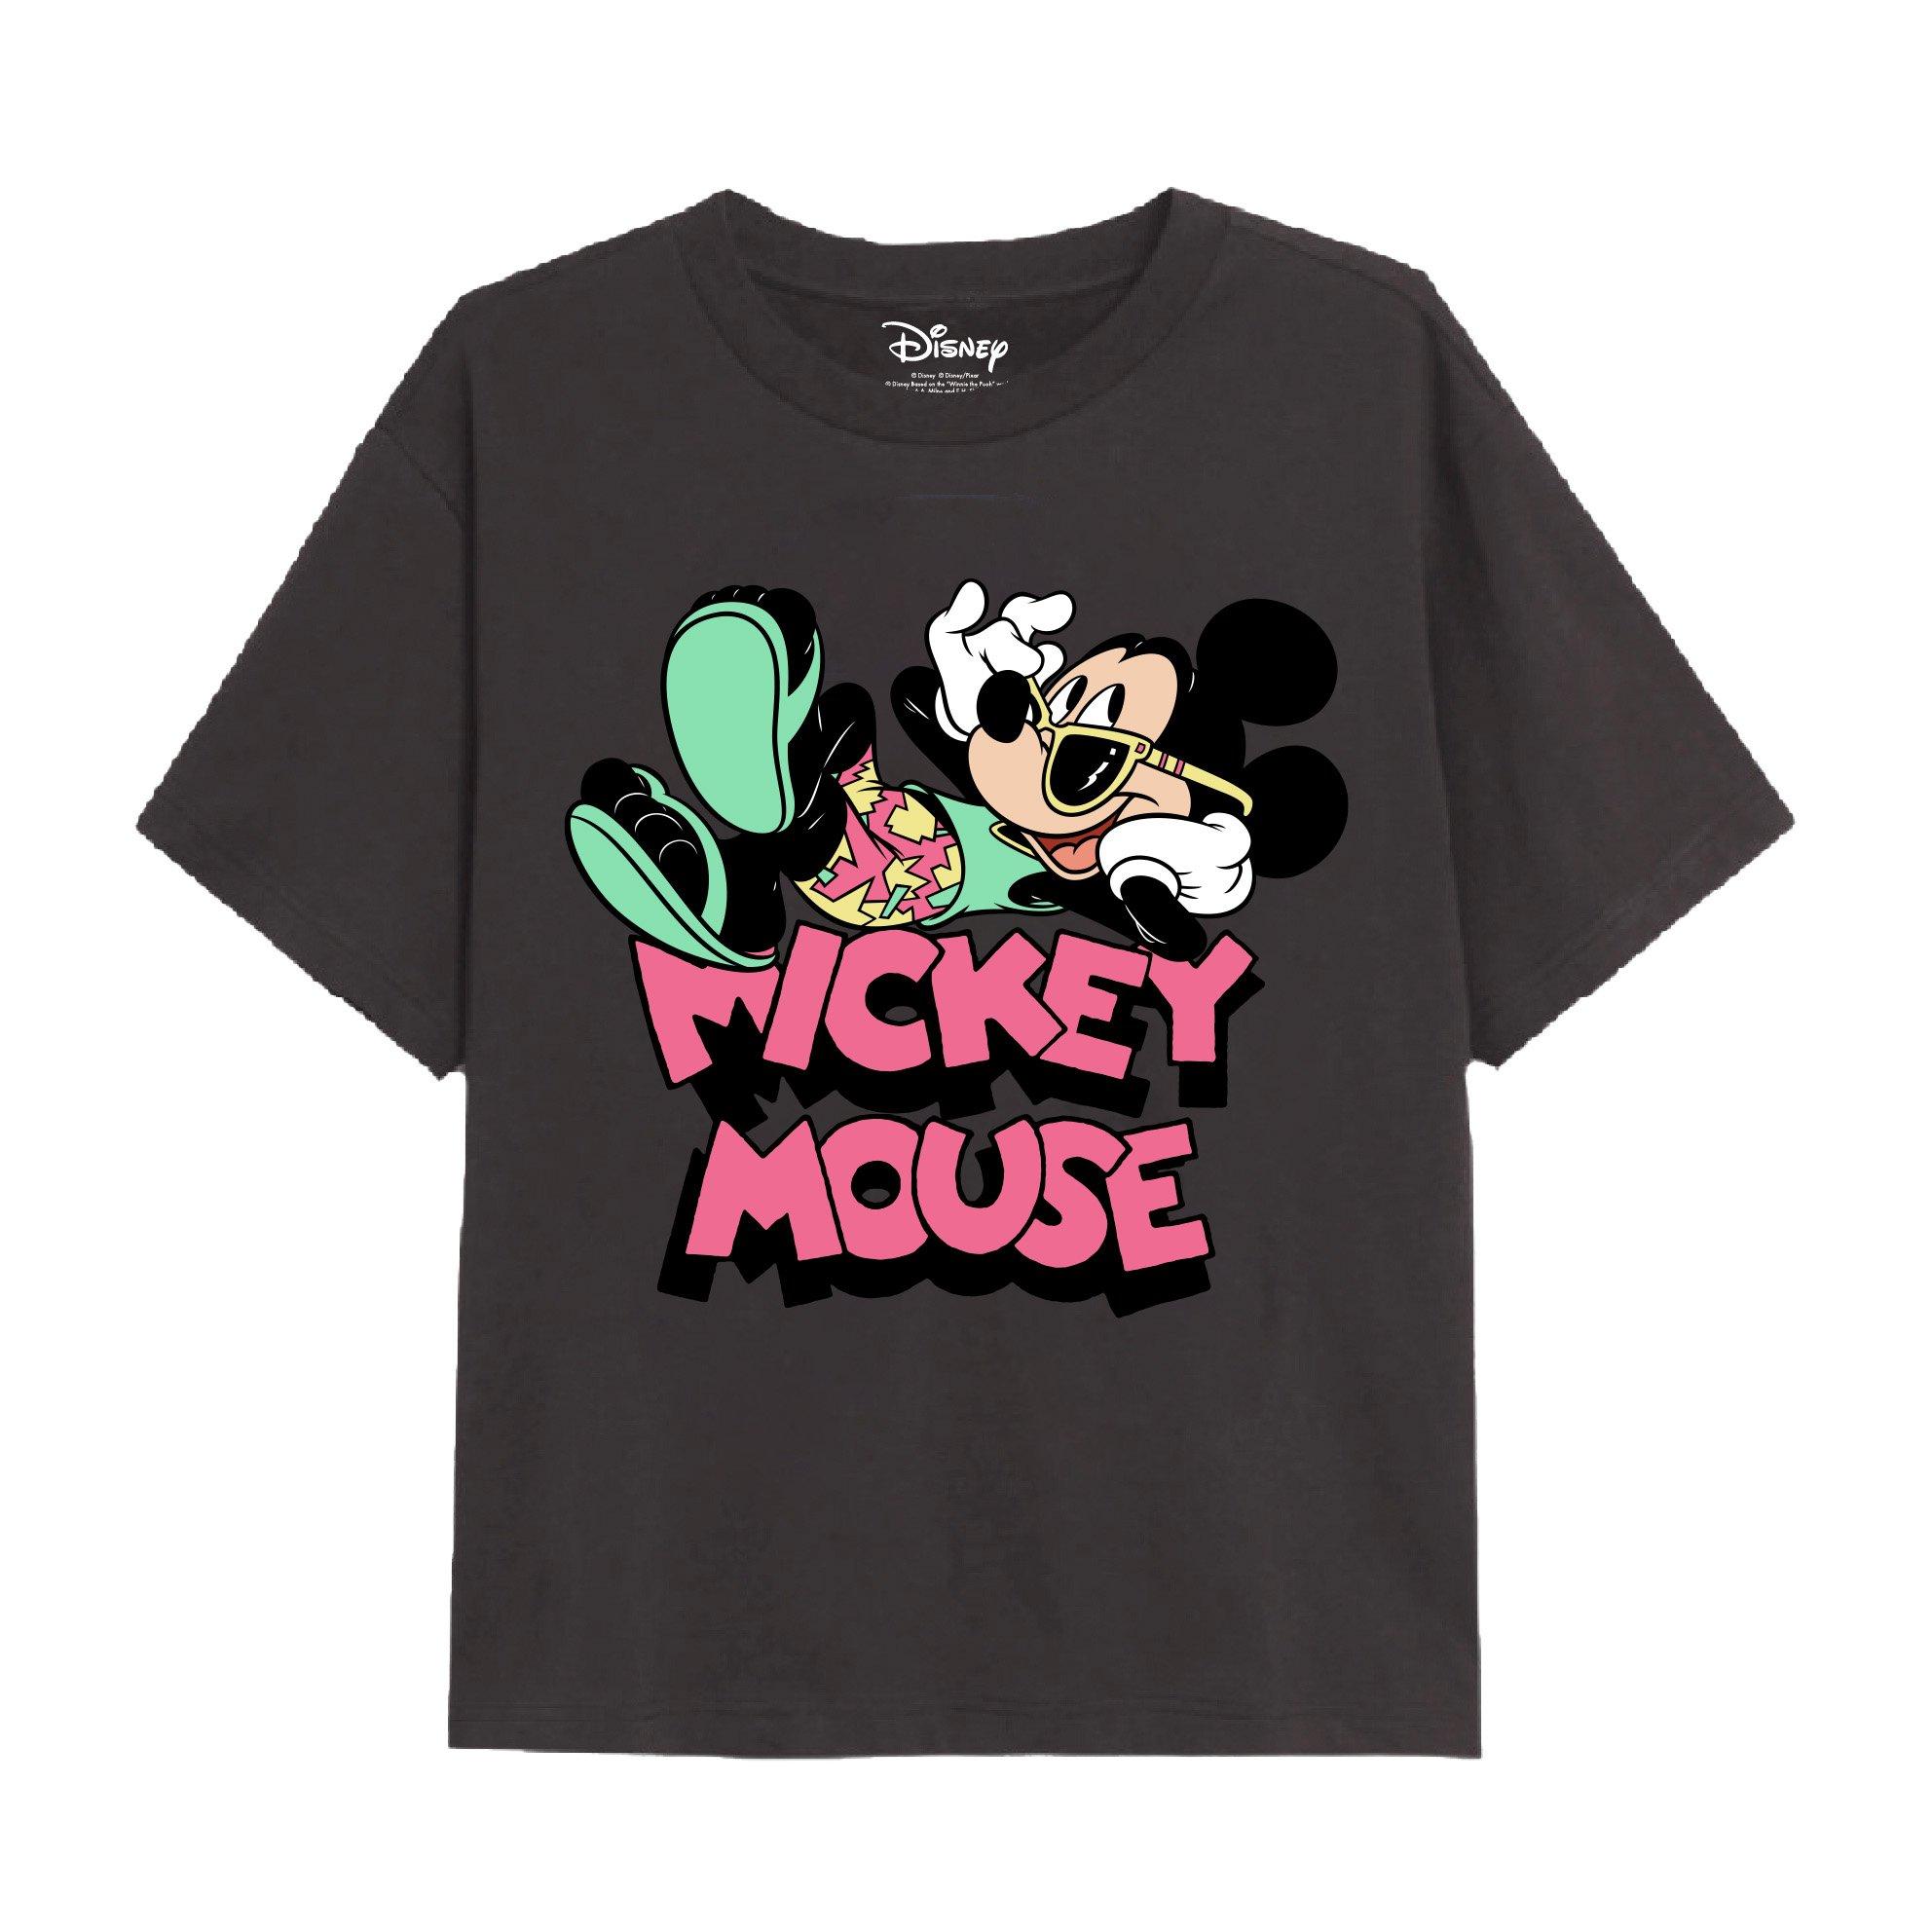 Праздничная футболка с Микки Маусом Disney, серый футболка в ребруску с микки и минни маус disney zara красный